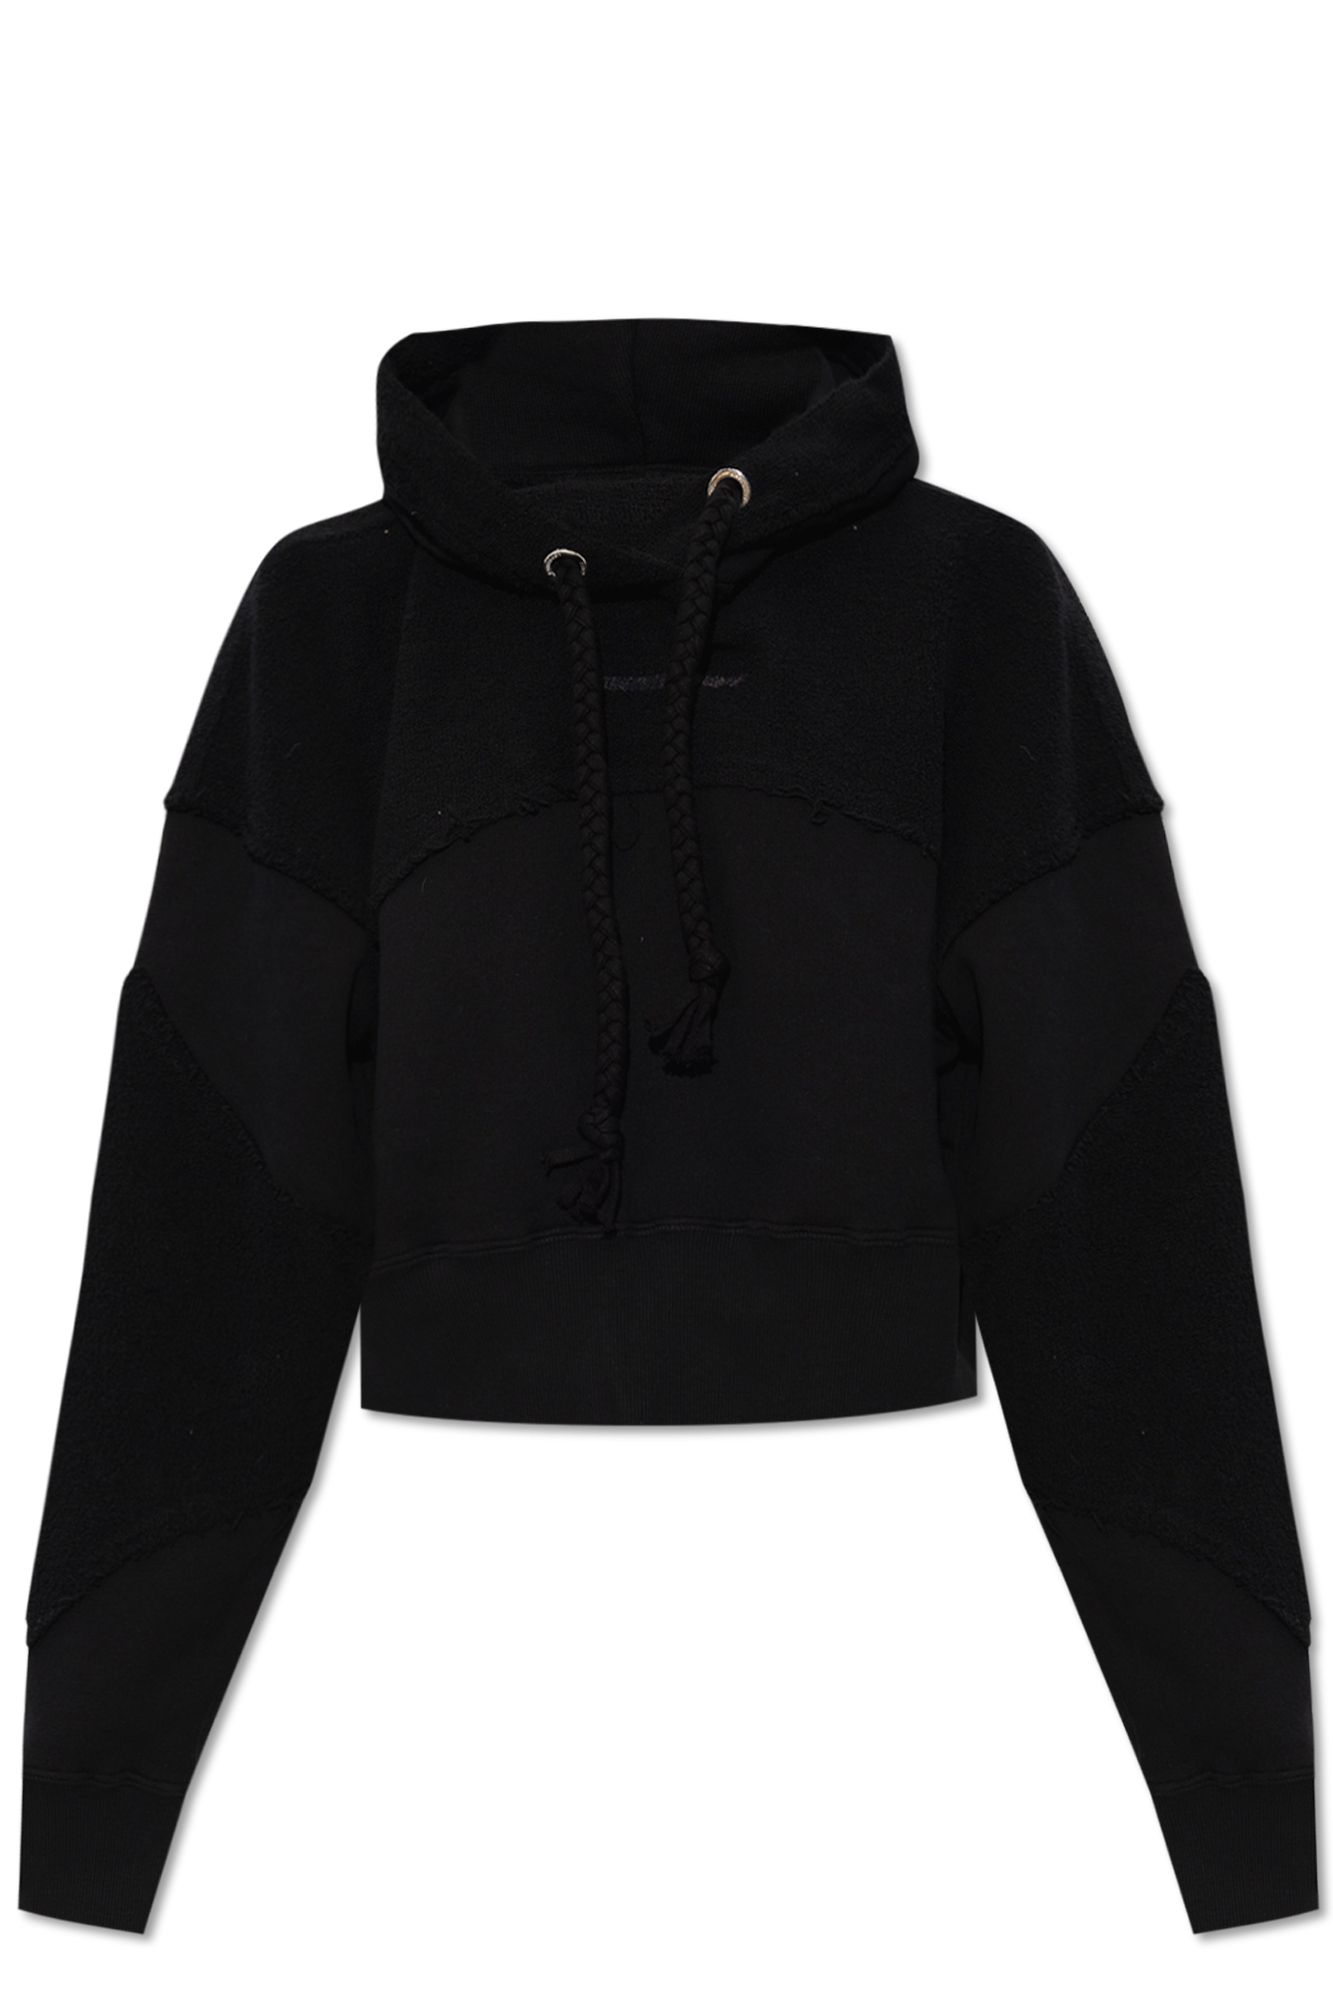 USA zip up hoodie/ pink brand hoodie - clothing & accessories - by owner -  apparel sale - craigslist